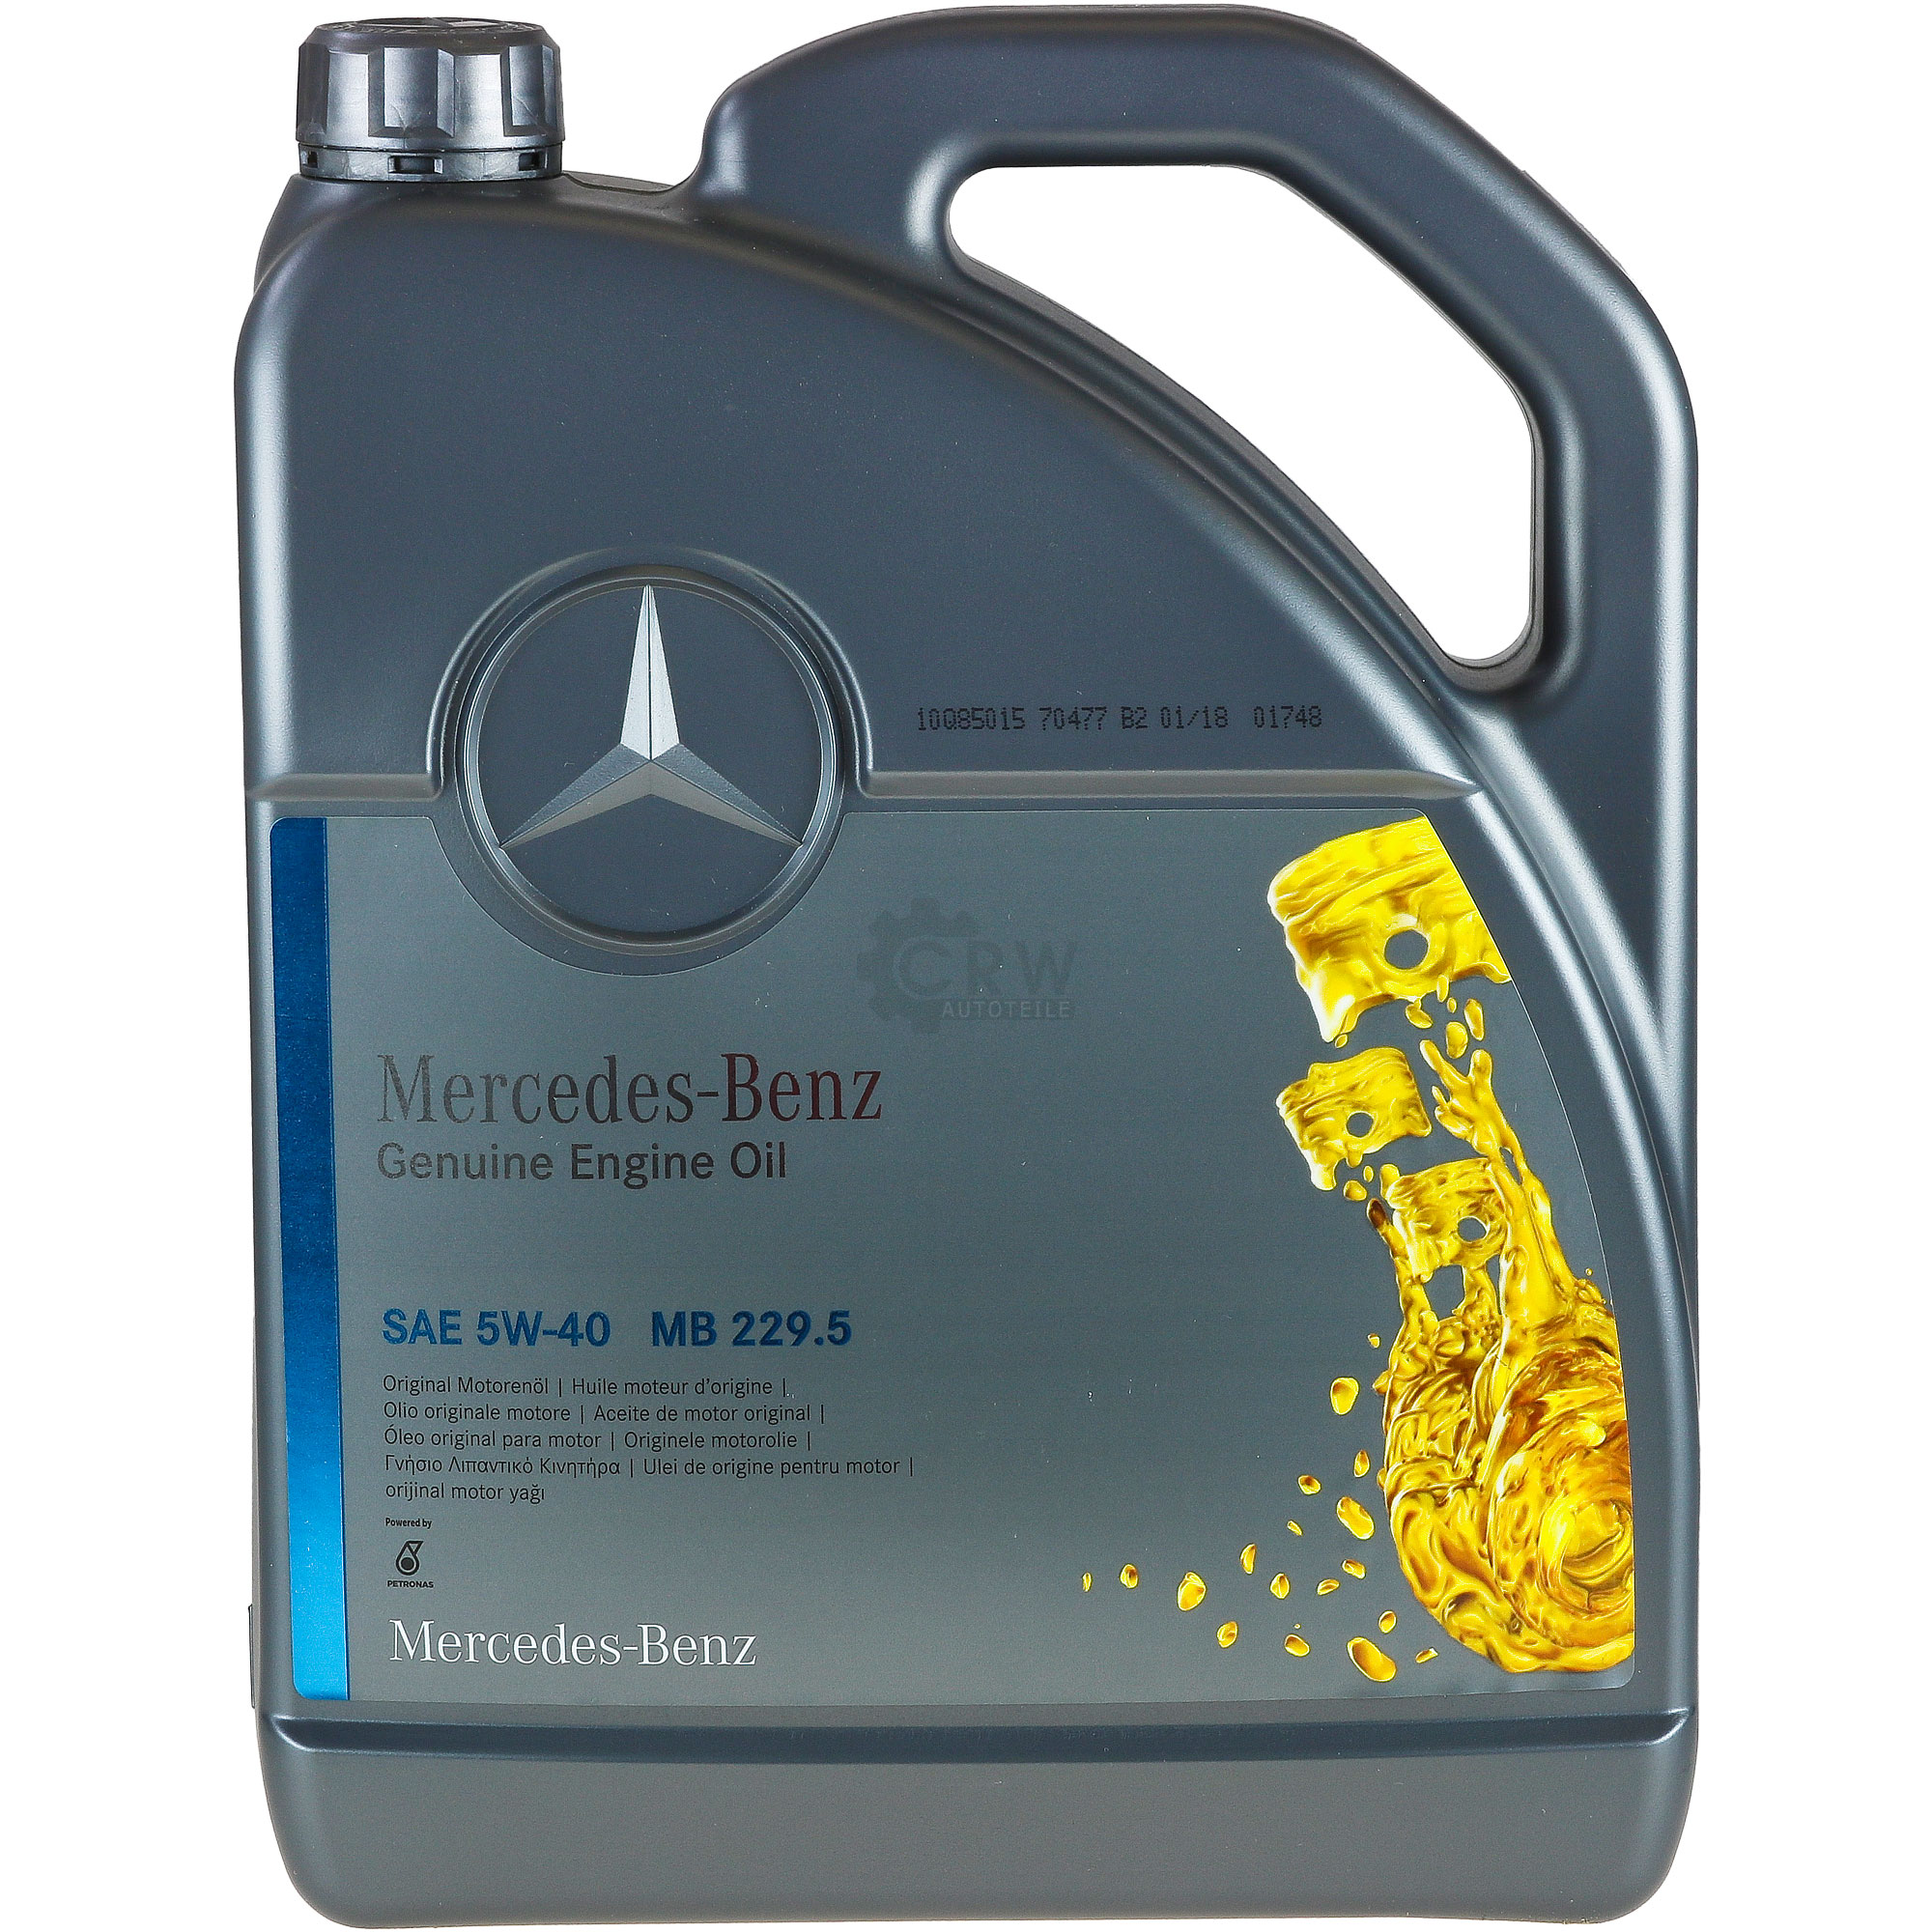 PKW Synthetic Motoröl für Mercedes-Benz 5W-40 MB (229.5) 5-Liter